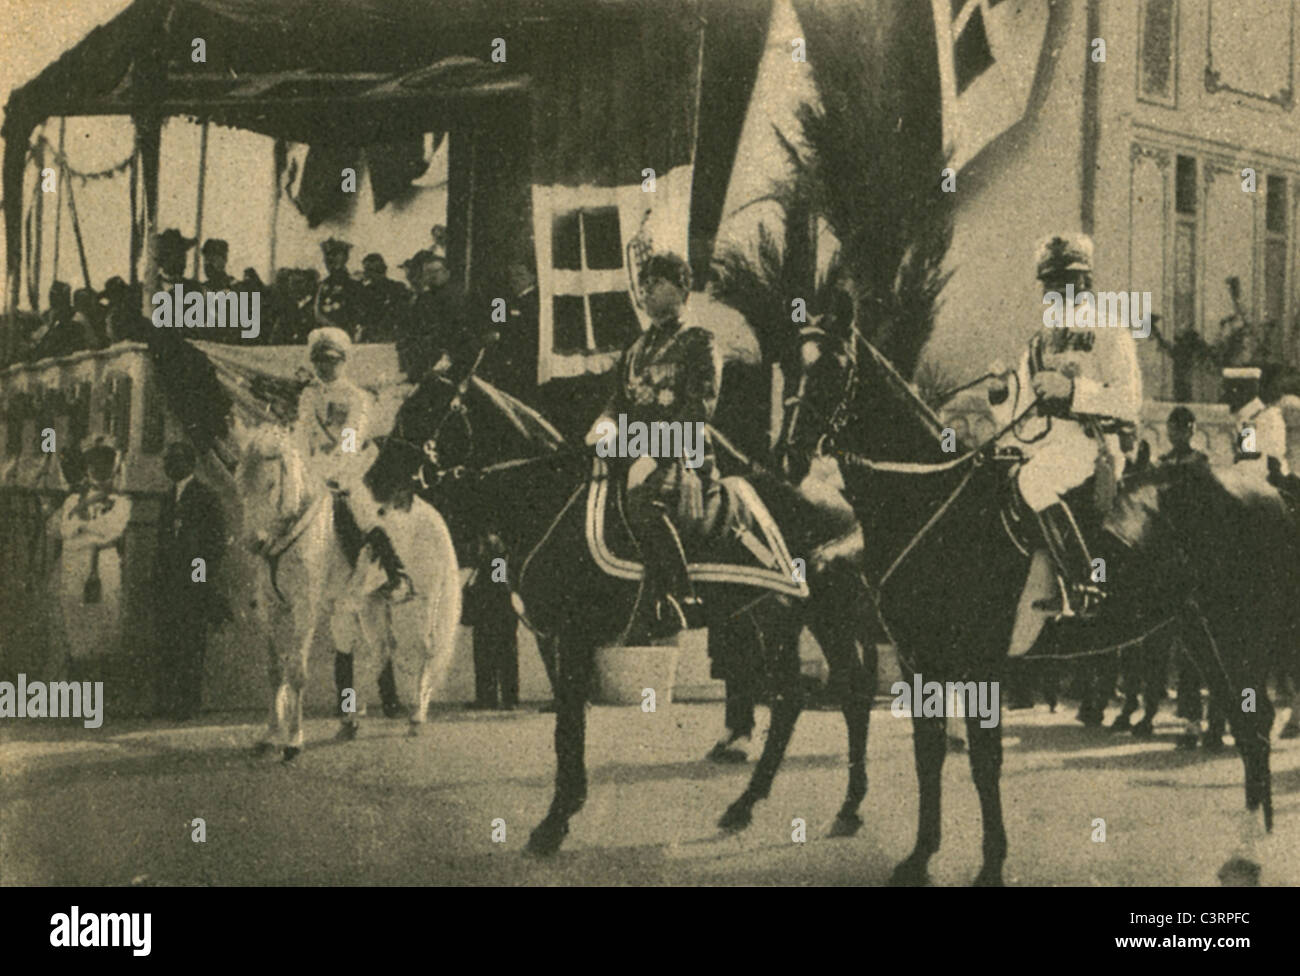 Fotos von der "großen Parade" in Tripolis, Libyen unter italienische Besatzung in den 1930er Jahren. Stockfoto